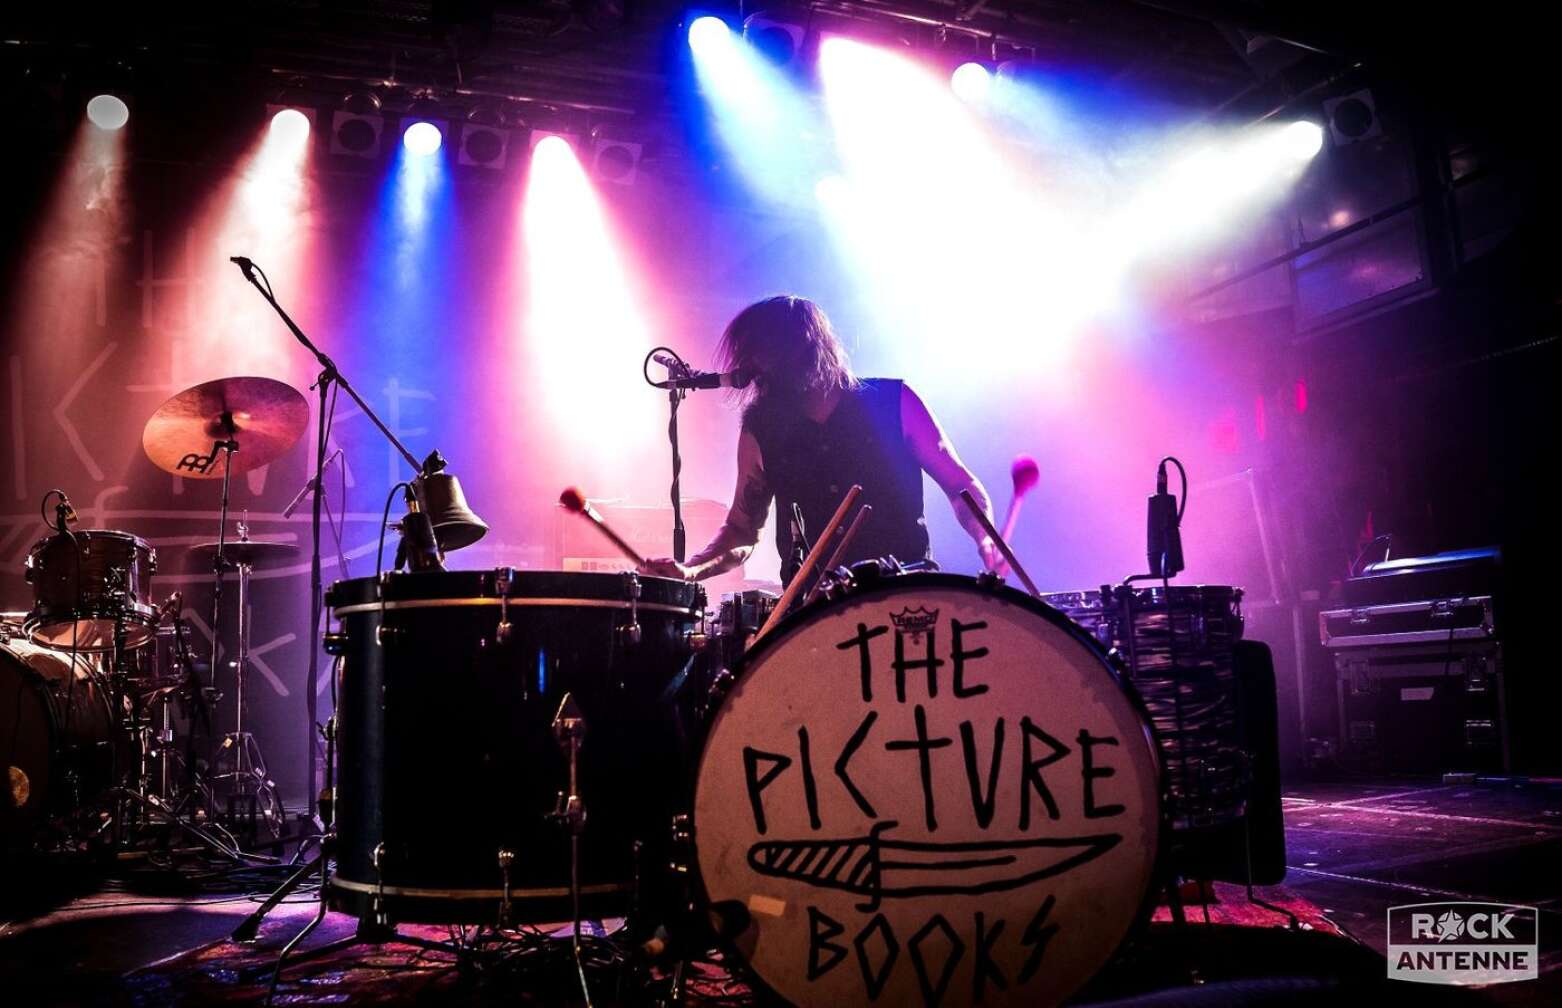 Schlagzeuger der Band "The Picturebooks"